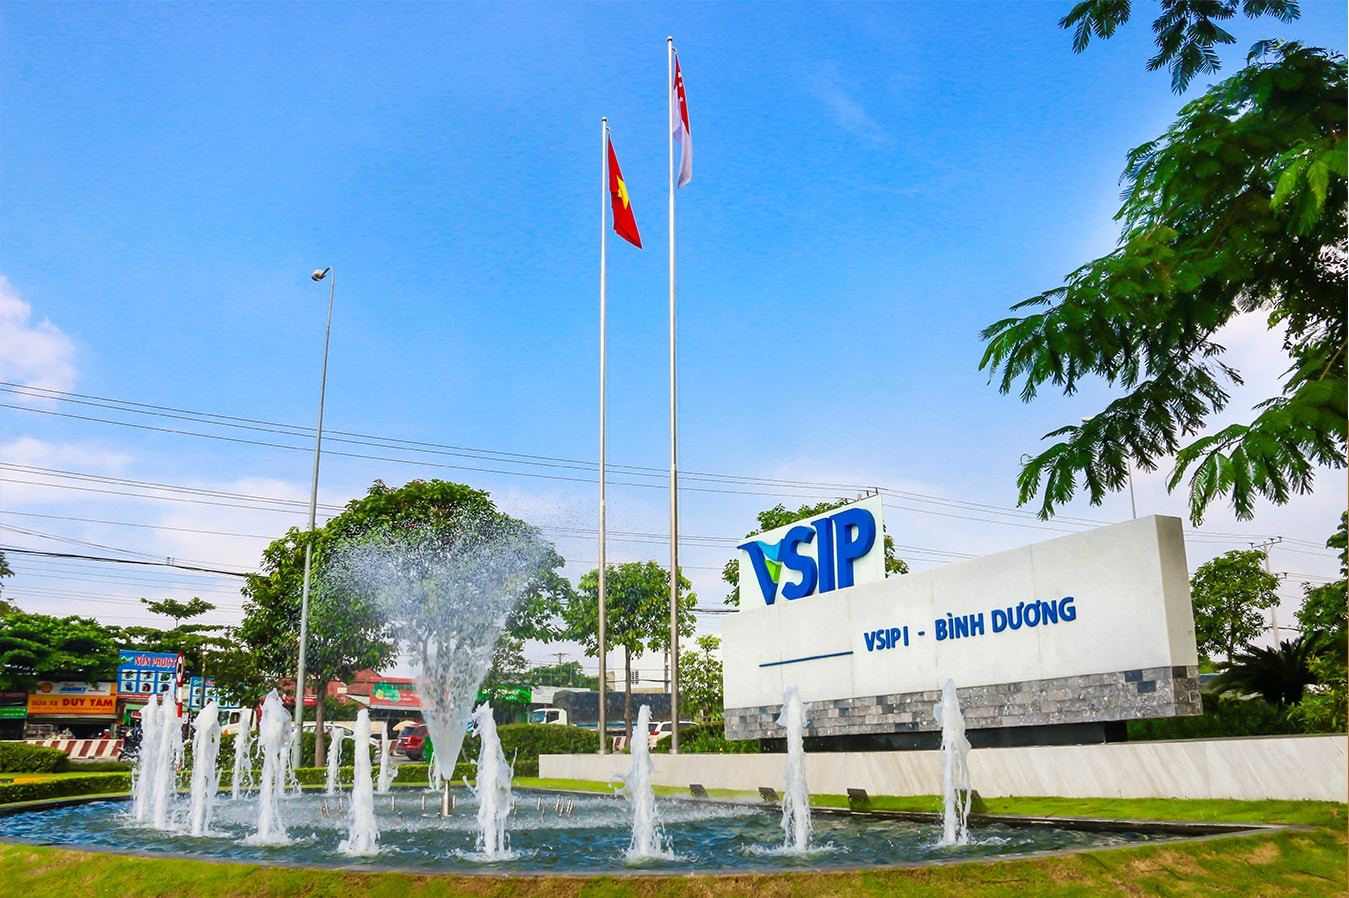 VSIP hiện là một trong những nhà phát triển khu công nghiệp (KCN) hàng đầu với 11 dự án trải dài khắp Việt Nam, tổng diện tích hơn 10.100 ha.